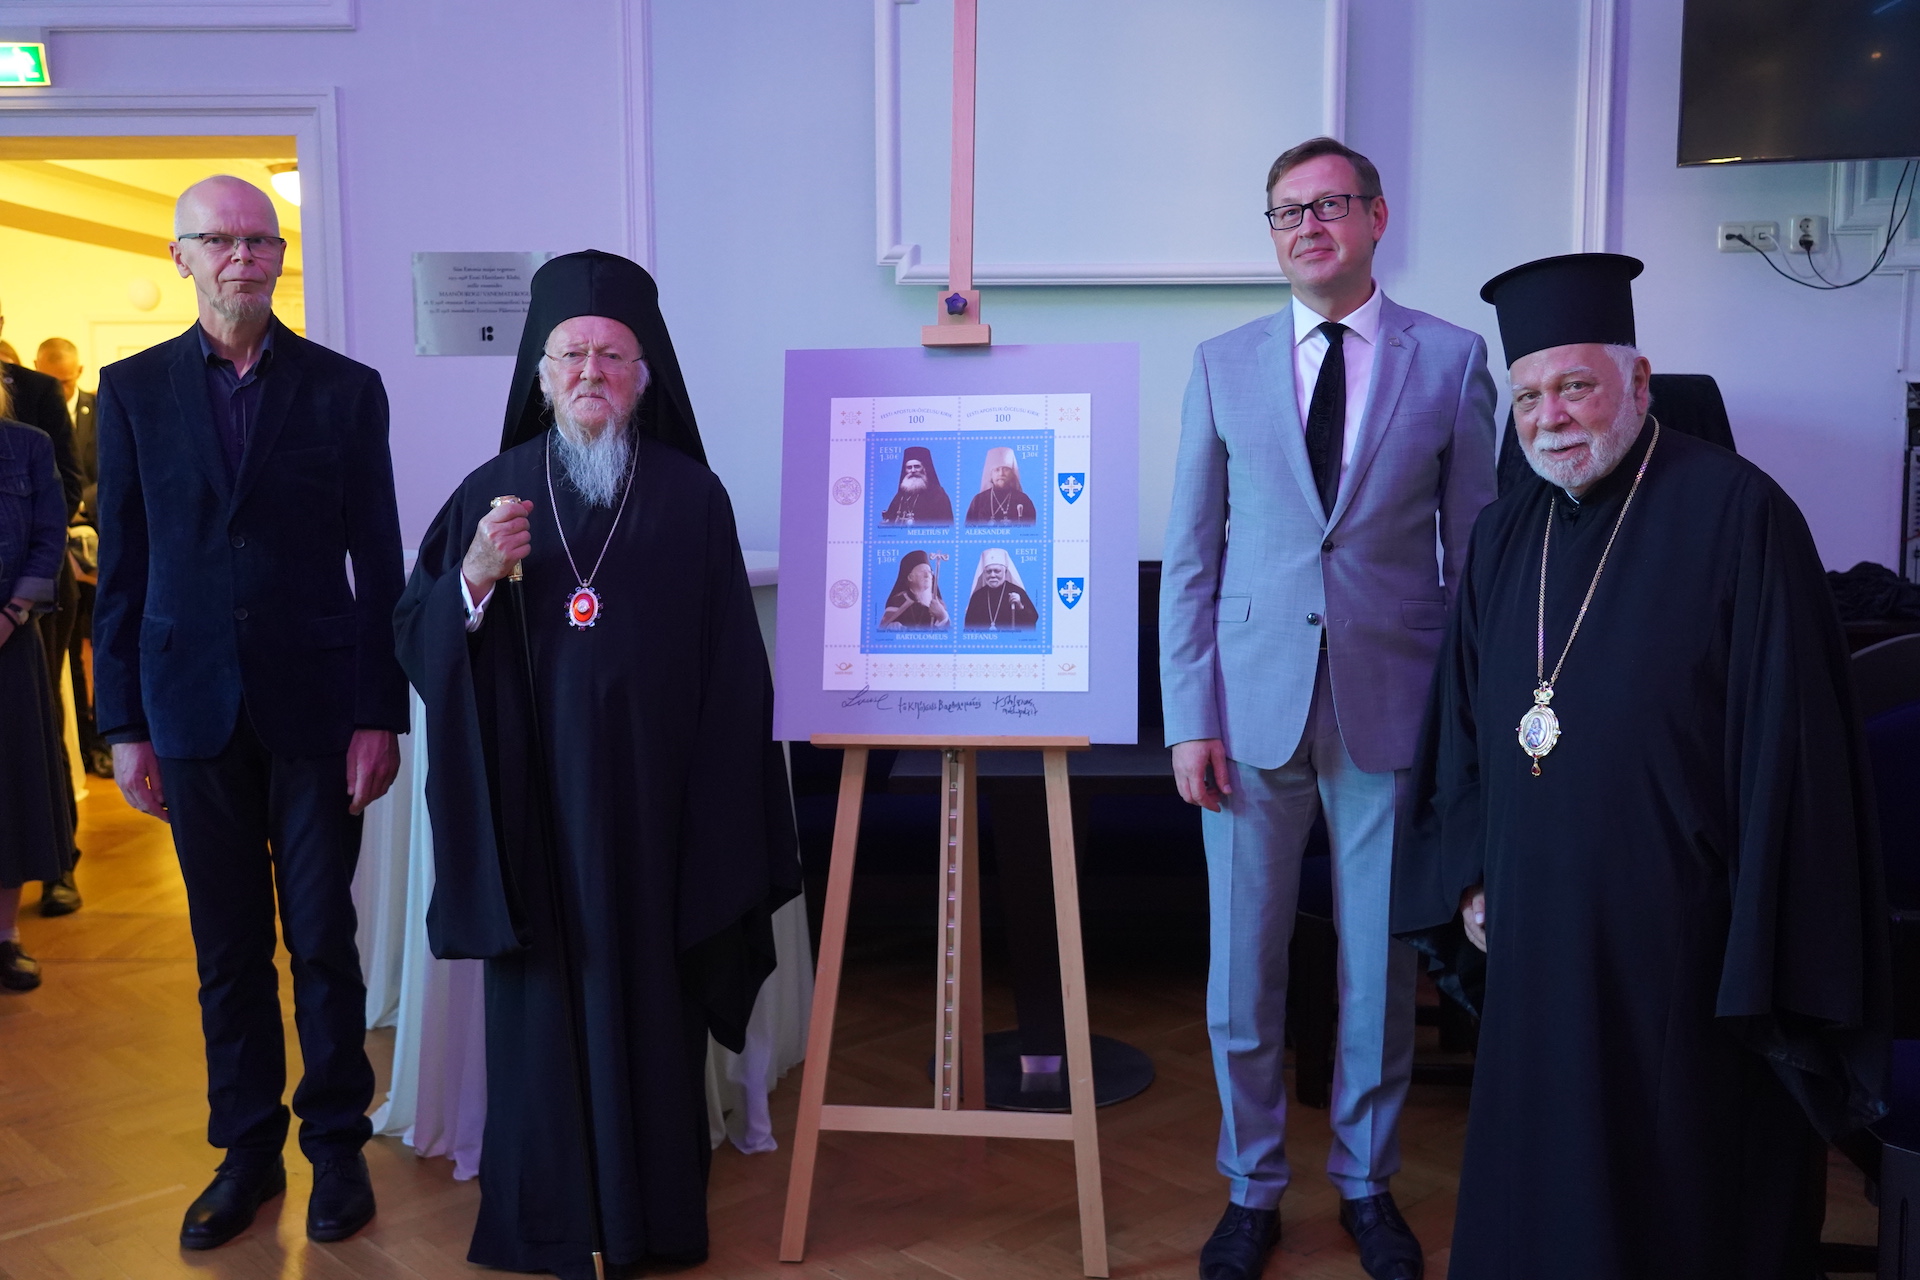 Παρουσίαση επετειακών γραμματοσήμων για τα 100 χρόνια Αυτονομίας της Εκκλησίας της Εσθονίας